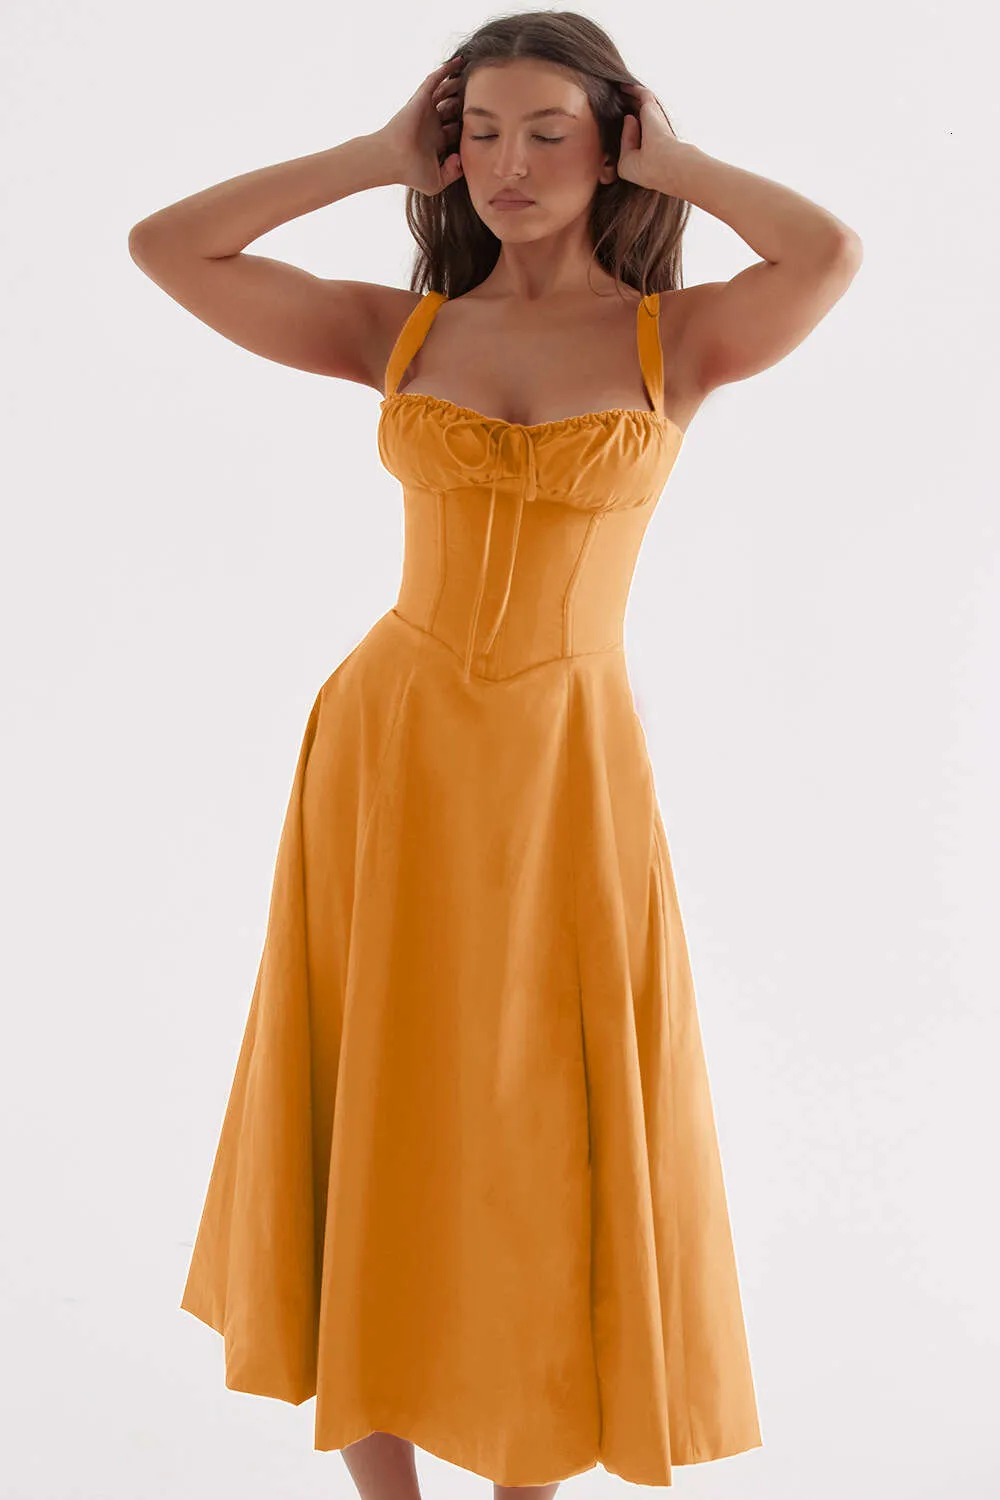 デザイナーの女性服夏エレガントでファッショナブルな高級感覚スリング優しいスタイルドレスフレンチスタイルマキシドレスレディースドレスブラックカクテルドレスQ83T